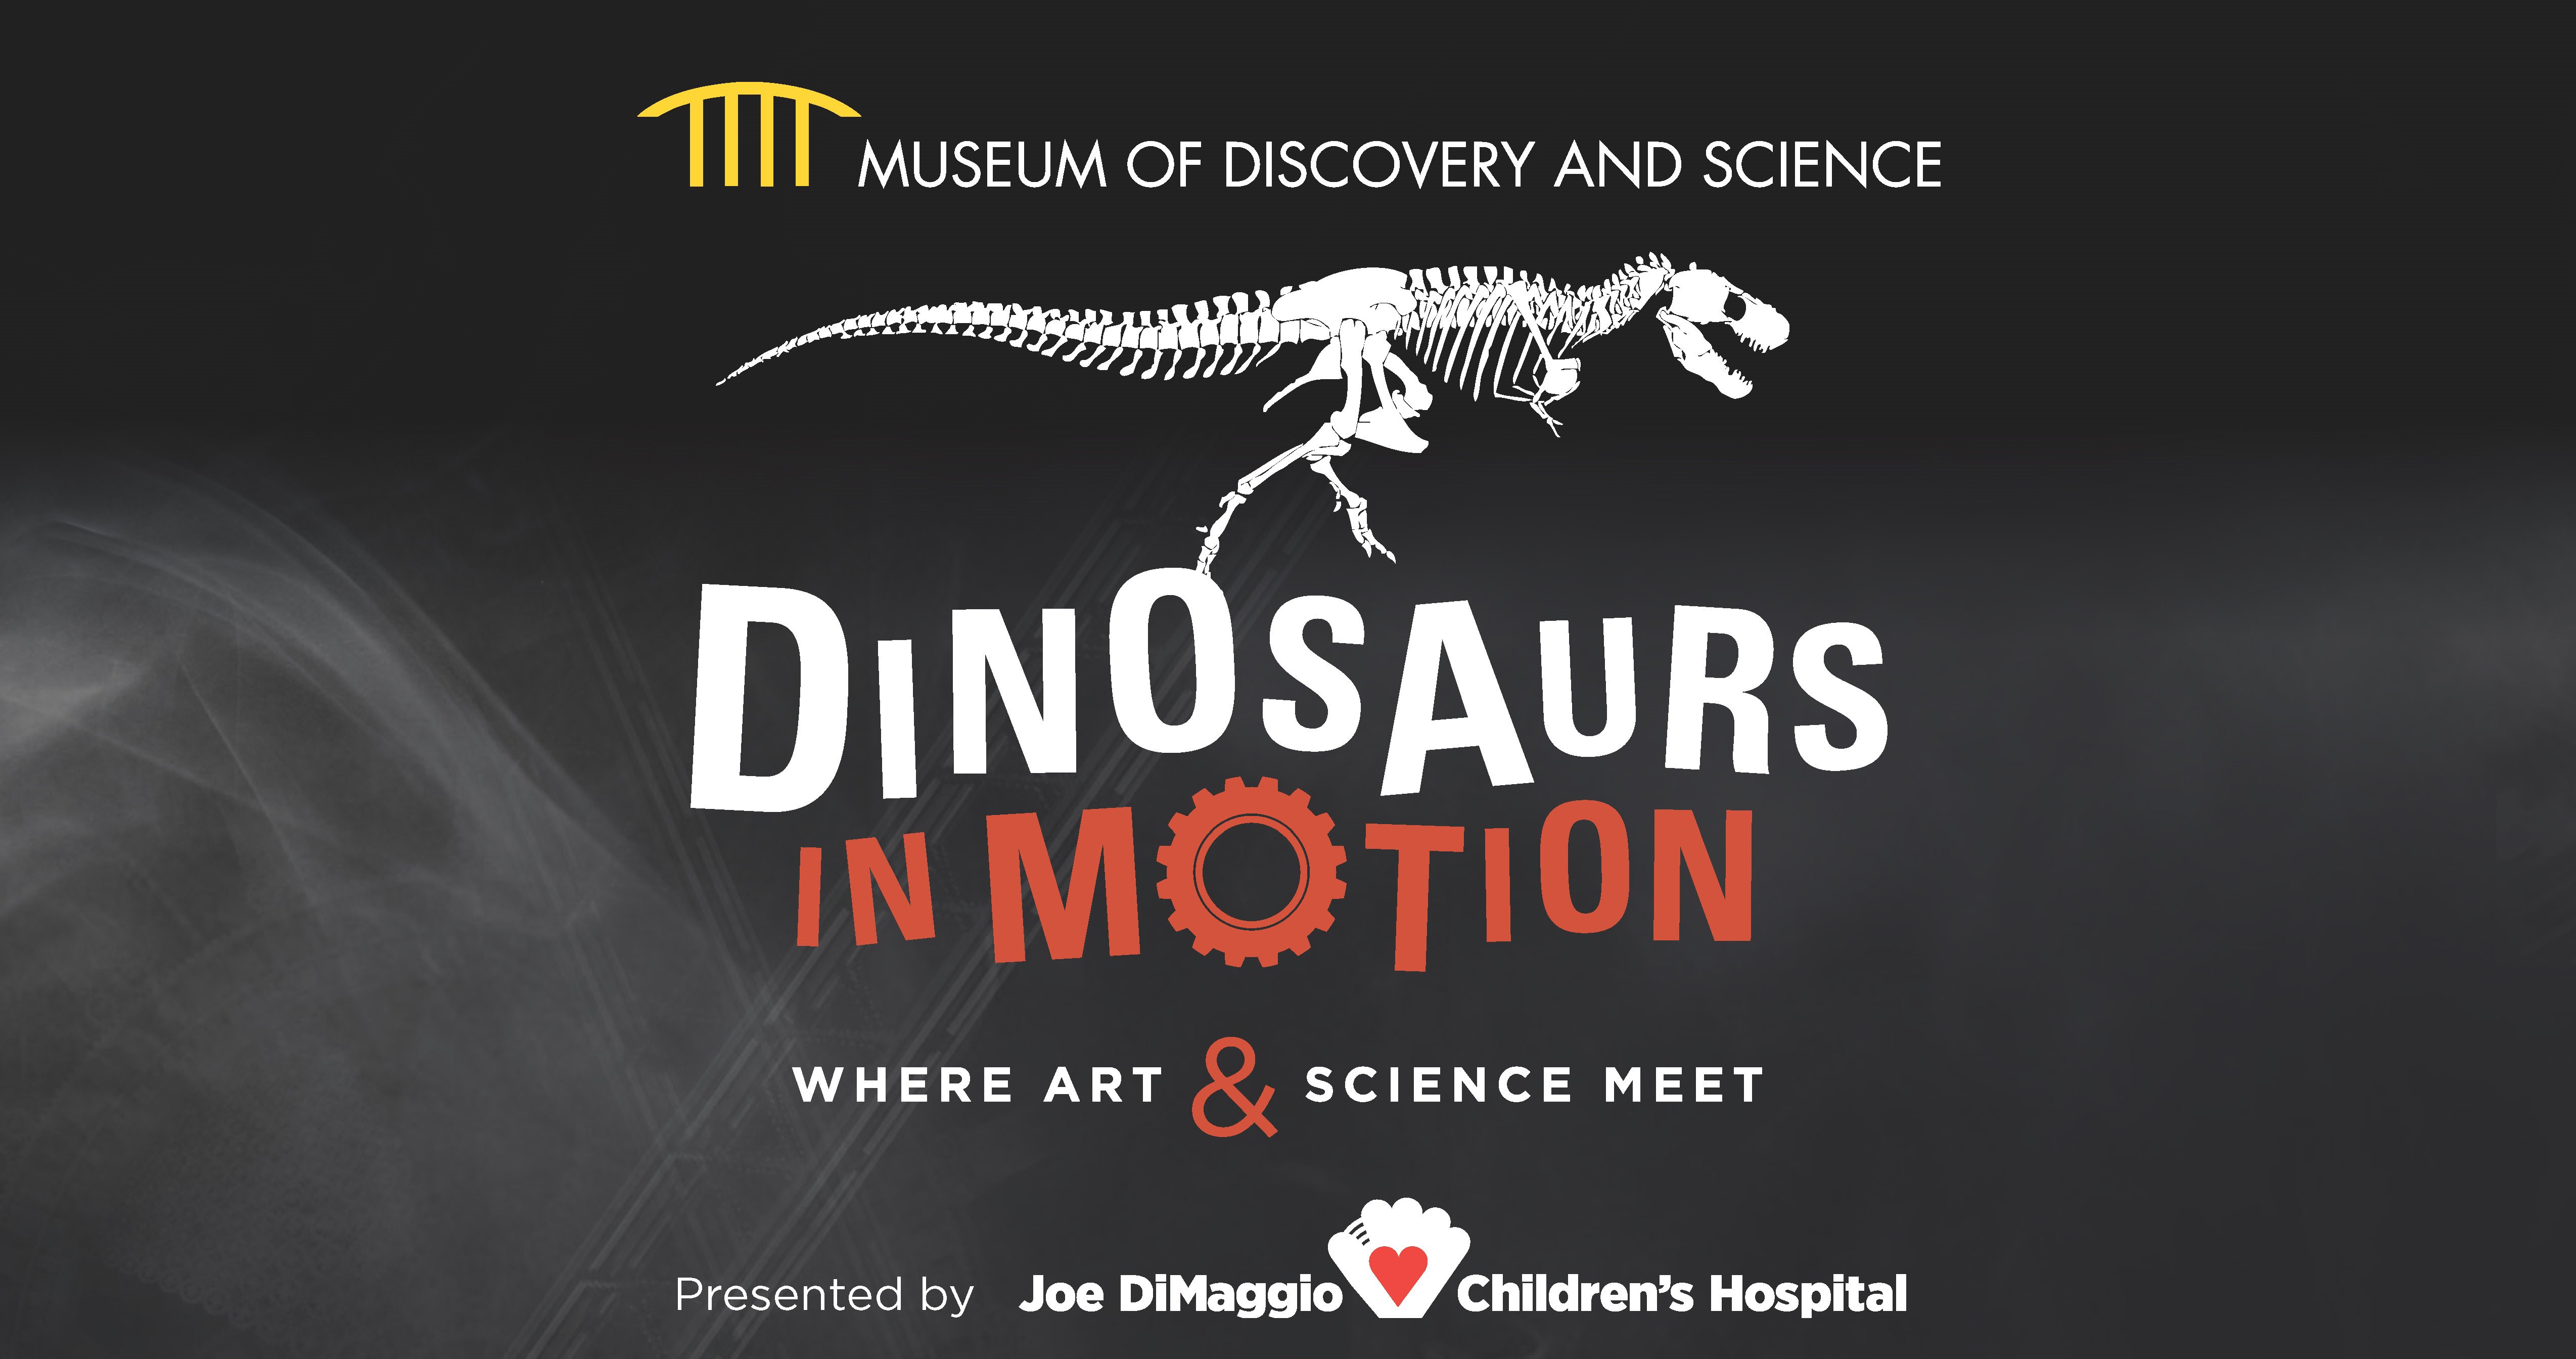 Art Meets Science  The Children's Museum